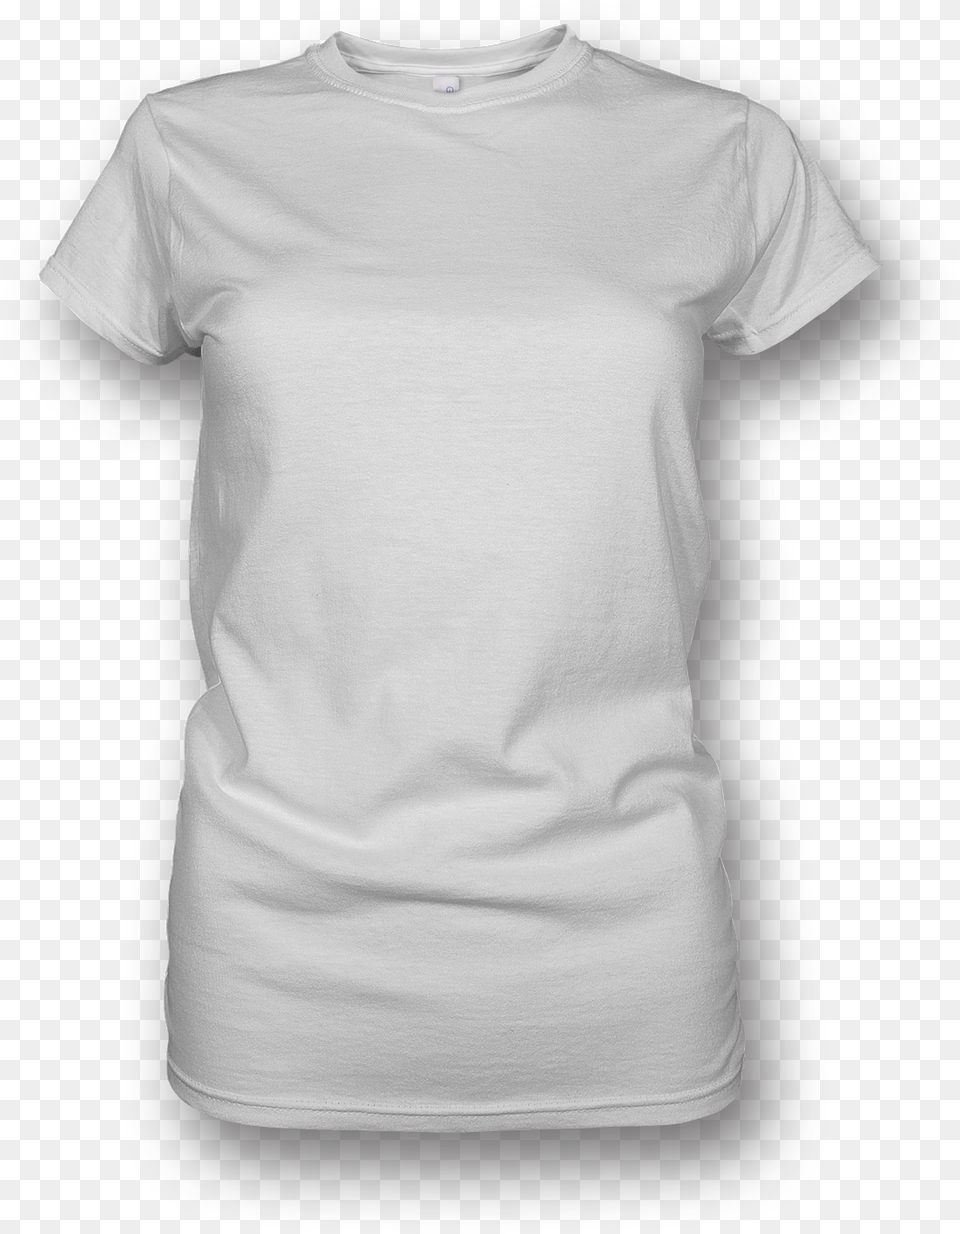 Women Shirt T Shirt Women, Clothing, T-shirt Png Image